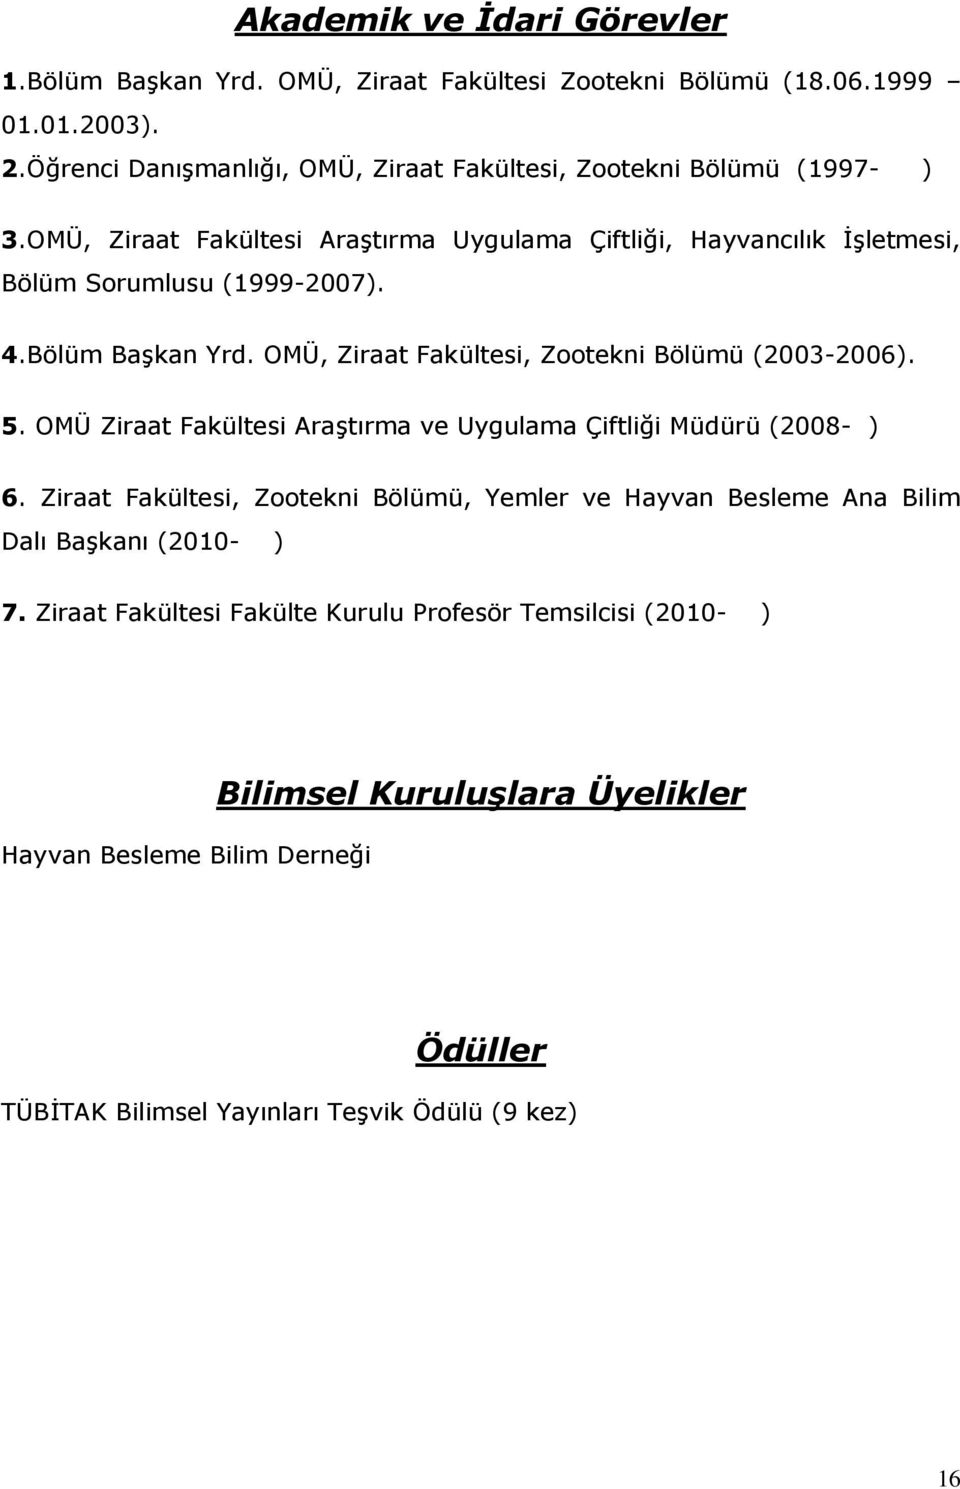 Bölüm Başkan Yrd. OMÜ, Ziraat Fakültesi, Zootekni Bölümü (2003-2006). 5. OMÜ Ziraat Fakültesi Araştırma ve Uygulama Çiftliği Müdürü (2008- ) 6.